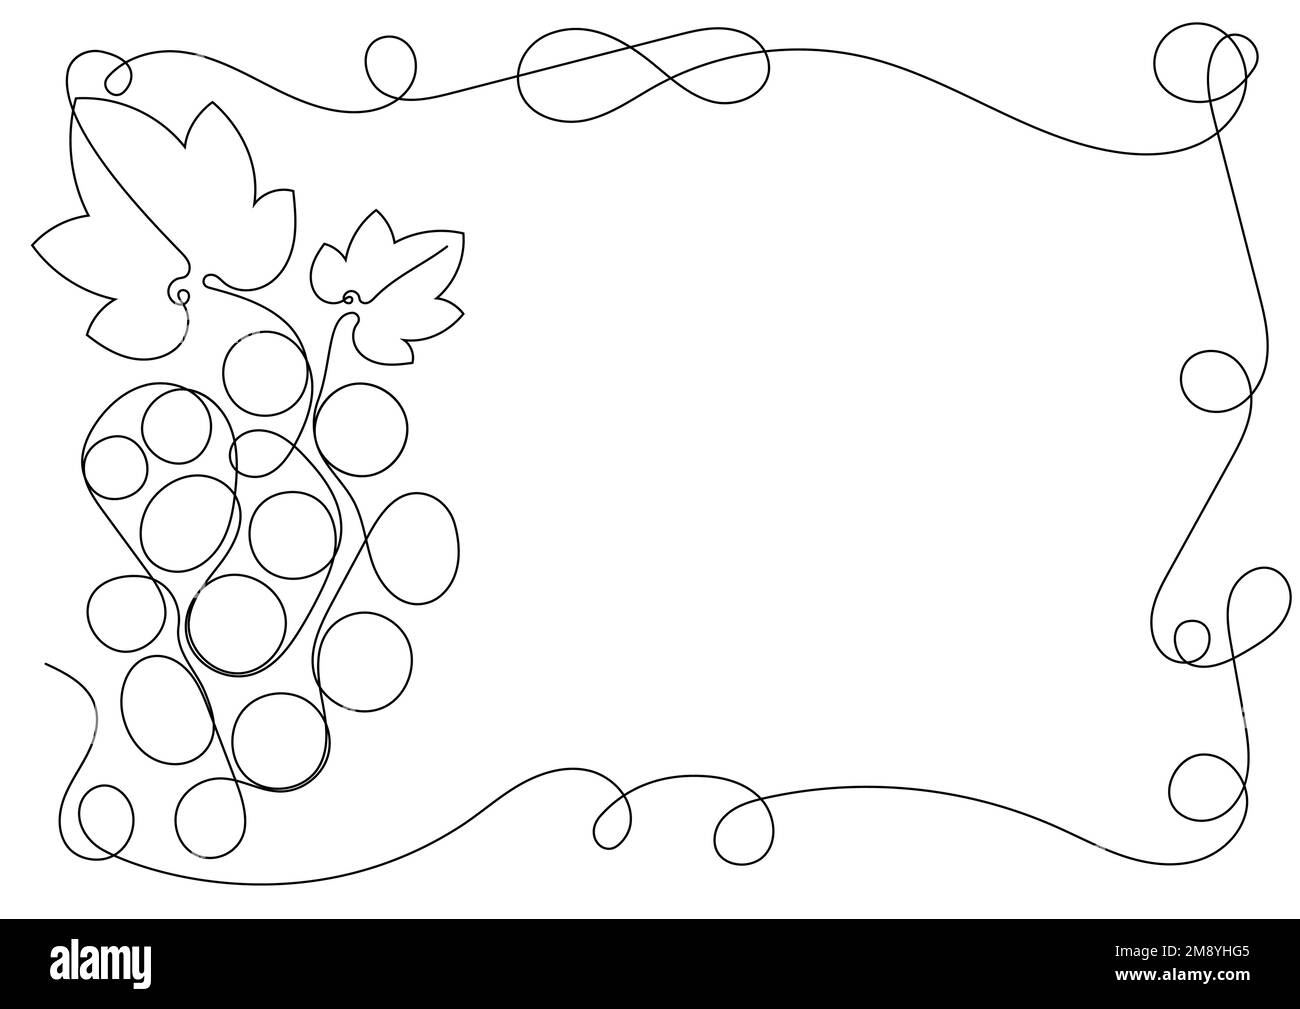 Cadre rectangulaire A4 avec bouquet de raisins, feuilles et tendrils pour la promotion du vin. Une illustration de ligne continue Carte publicitaire. Vecteur plat simple Illustration de Vecteur